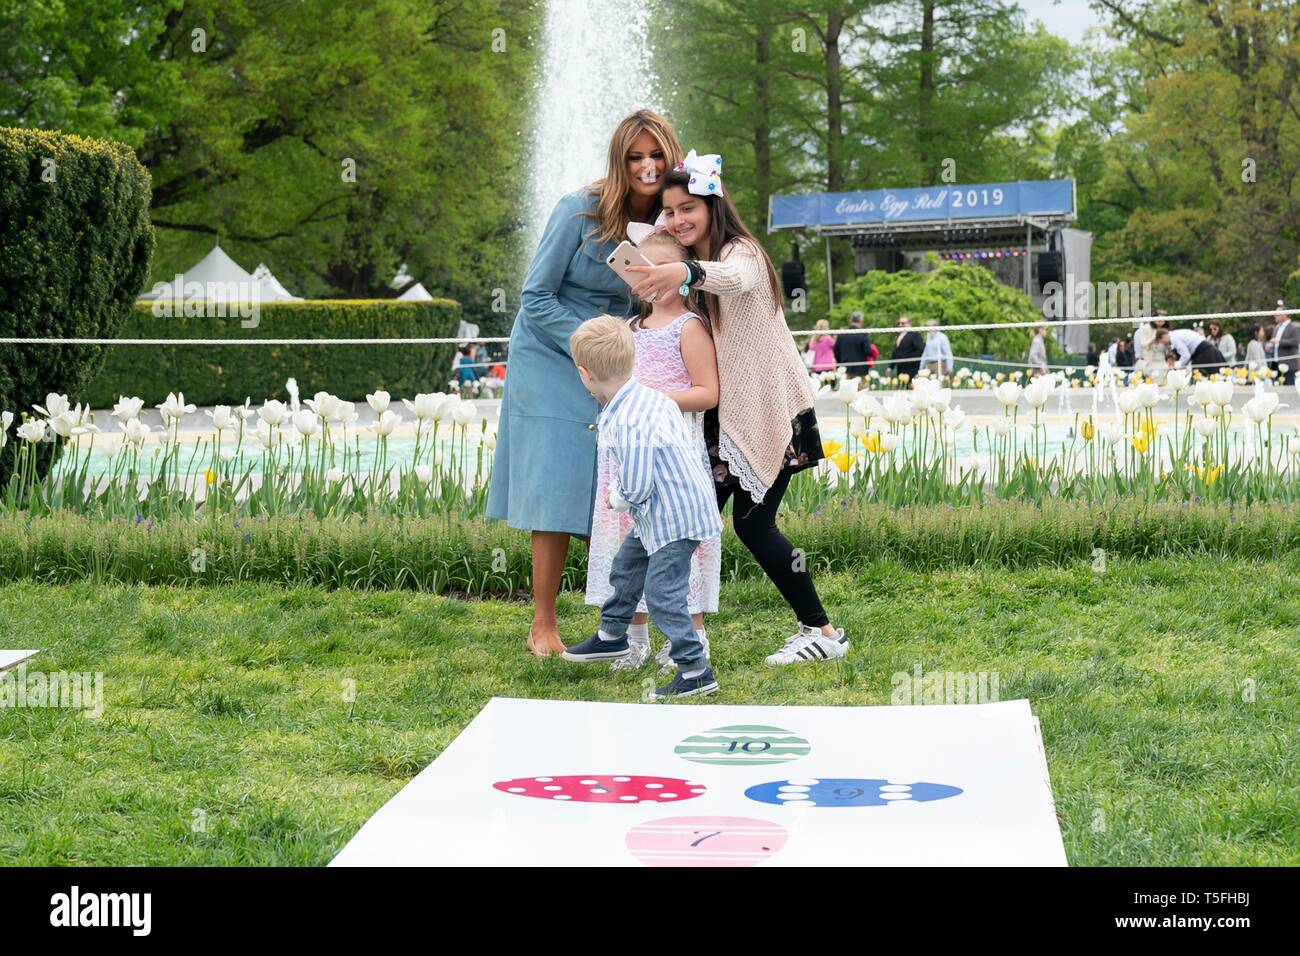 U.S prima signora Melania Trump pone per un selfie alla campana gioco durante il White House Easter Egg Roll evento sul prato Sud della Casa Bianca Aprile 22, 2019 a Washington, DC. Questa è la 141anno per le relazioni annuali di primavera evento. Foto Stock